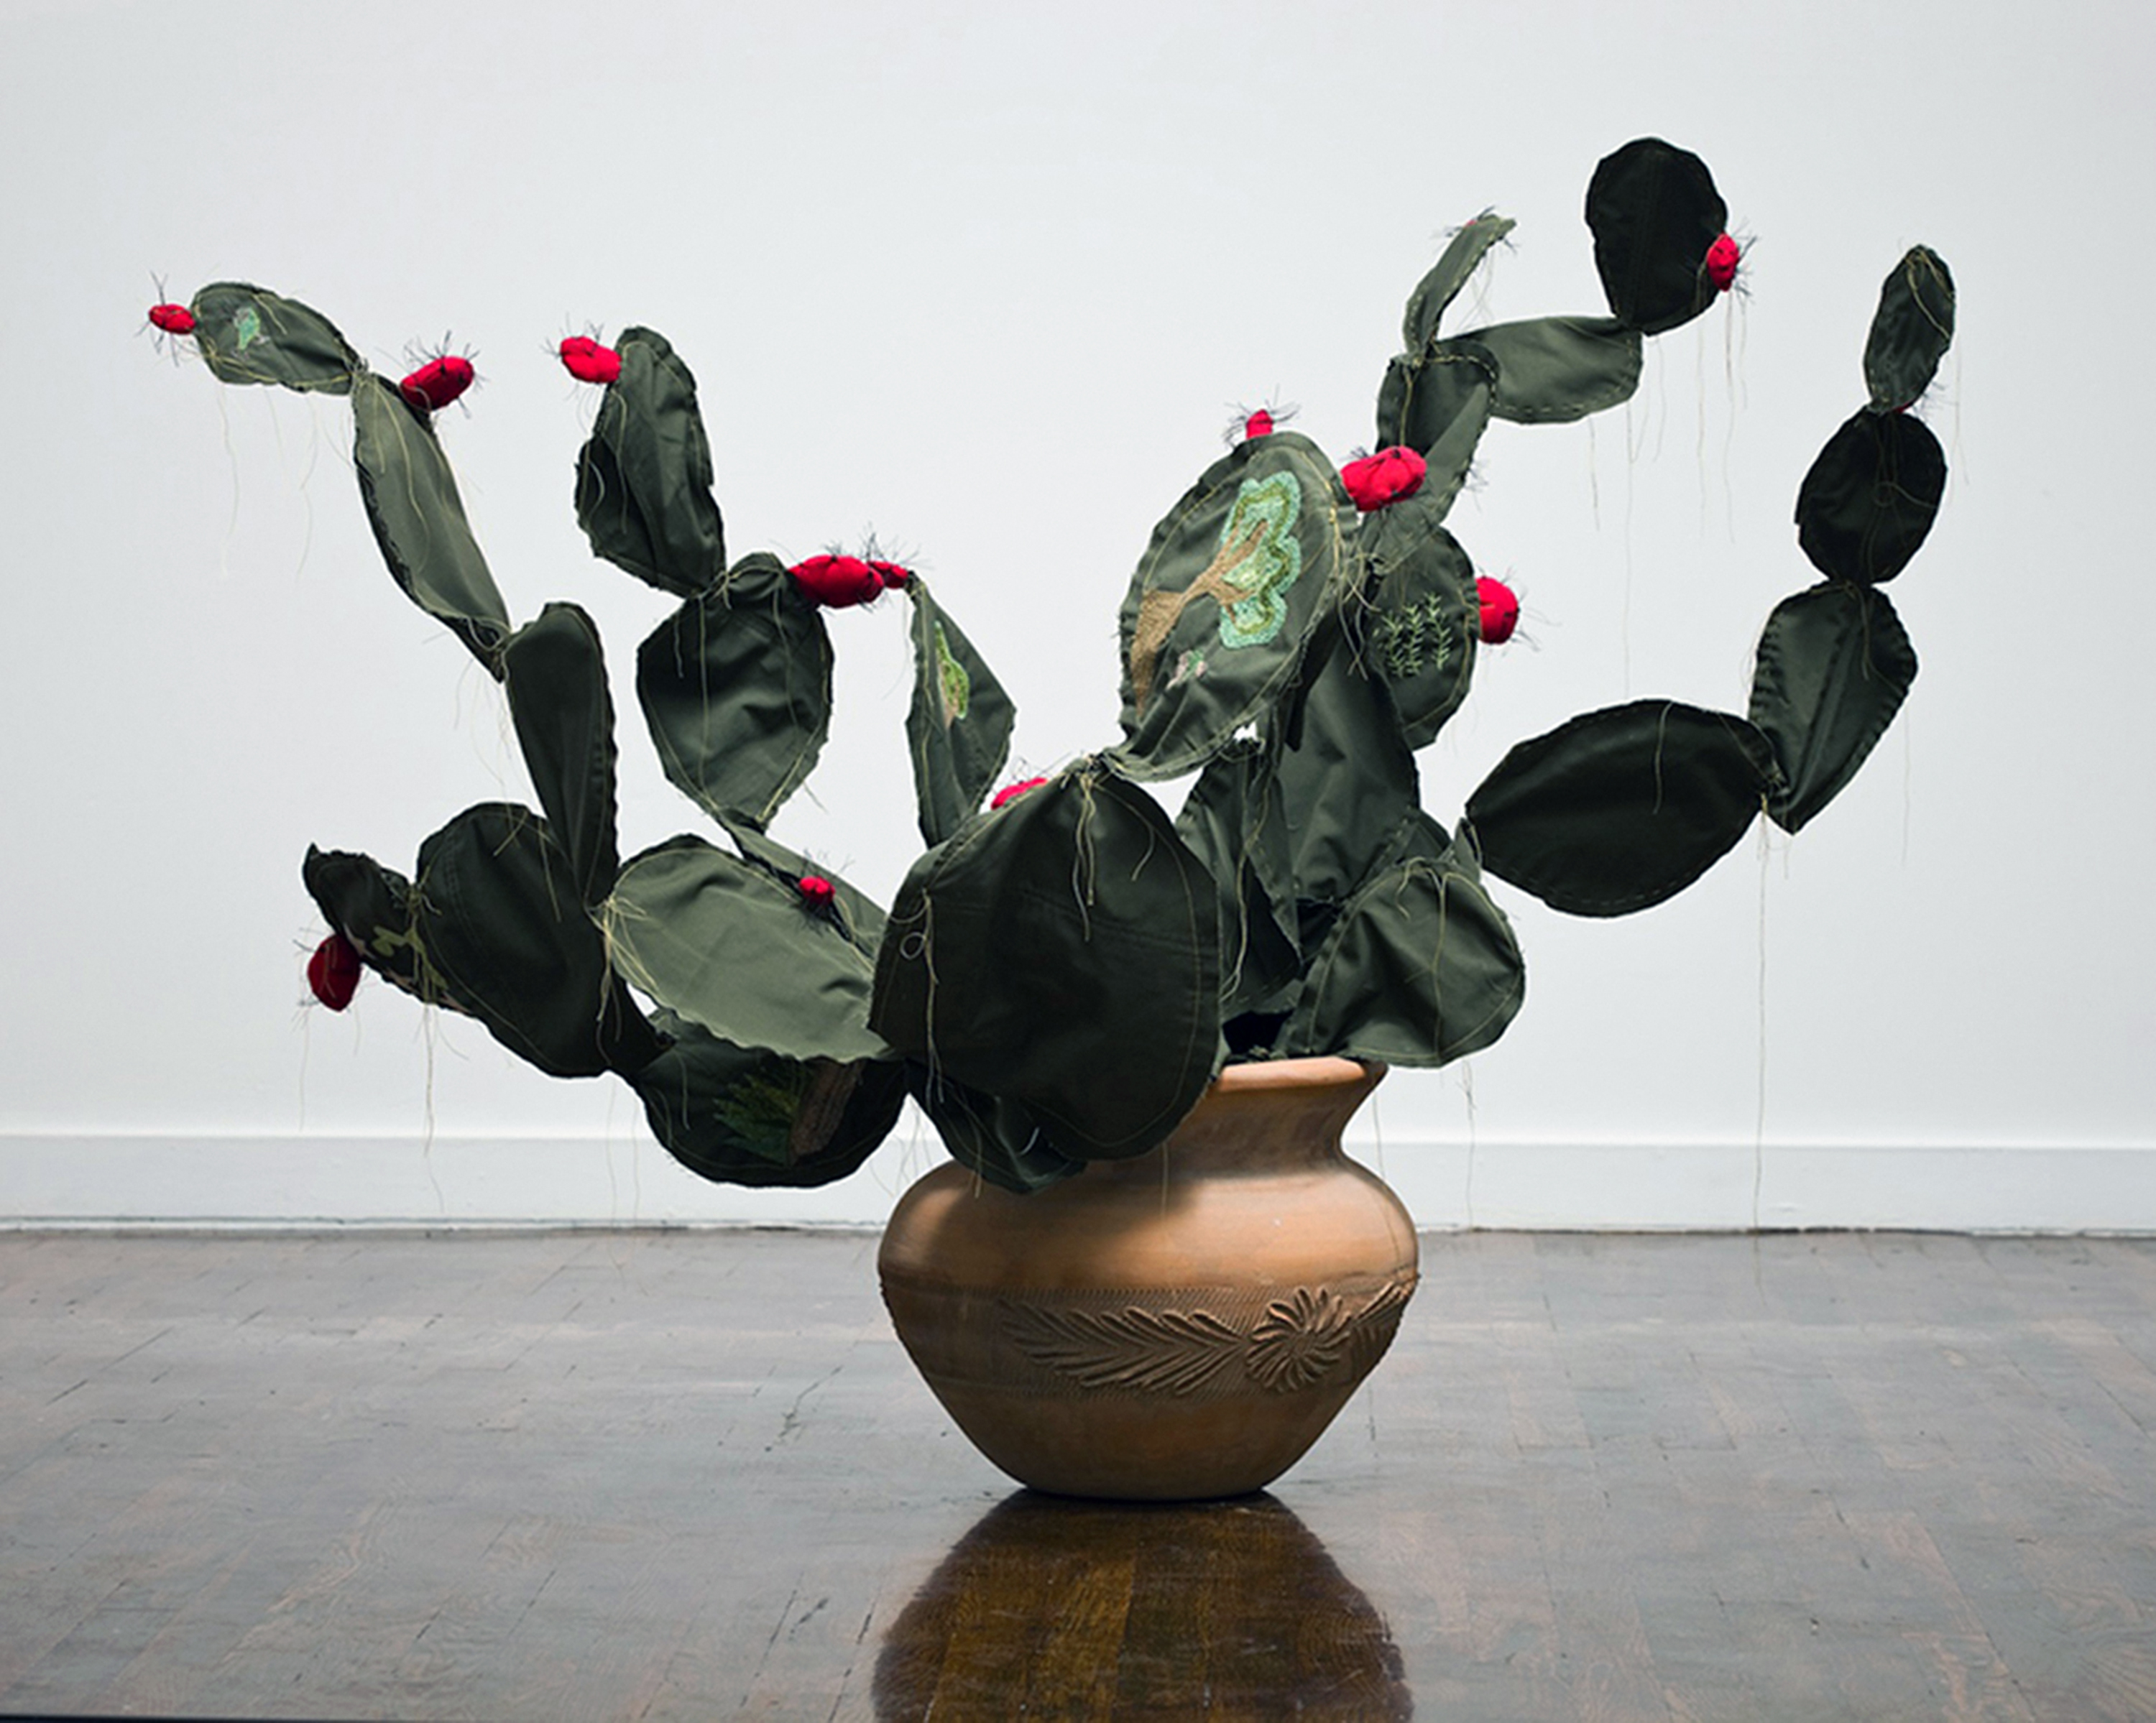 Margarita Cabrera's Space in Between sculptures mimic desert plants of the Sonoran Desert